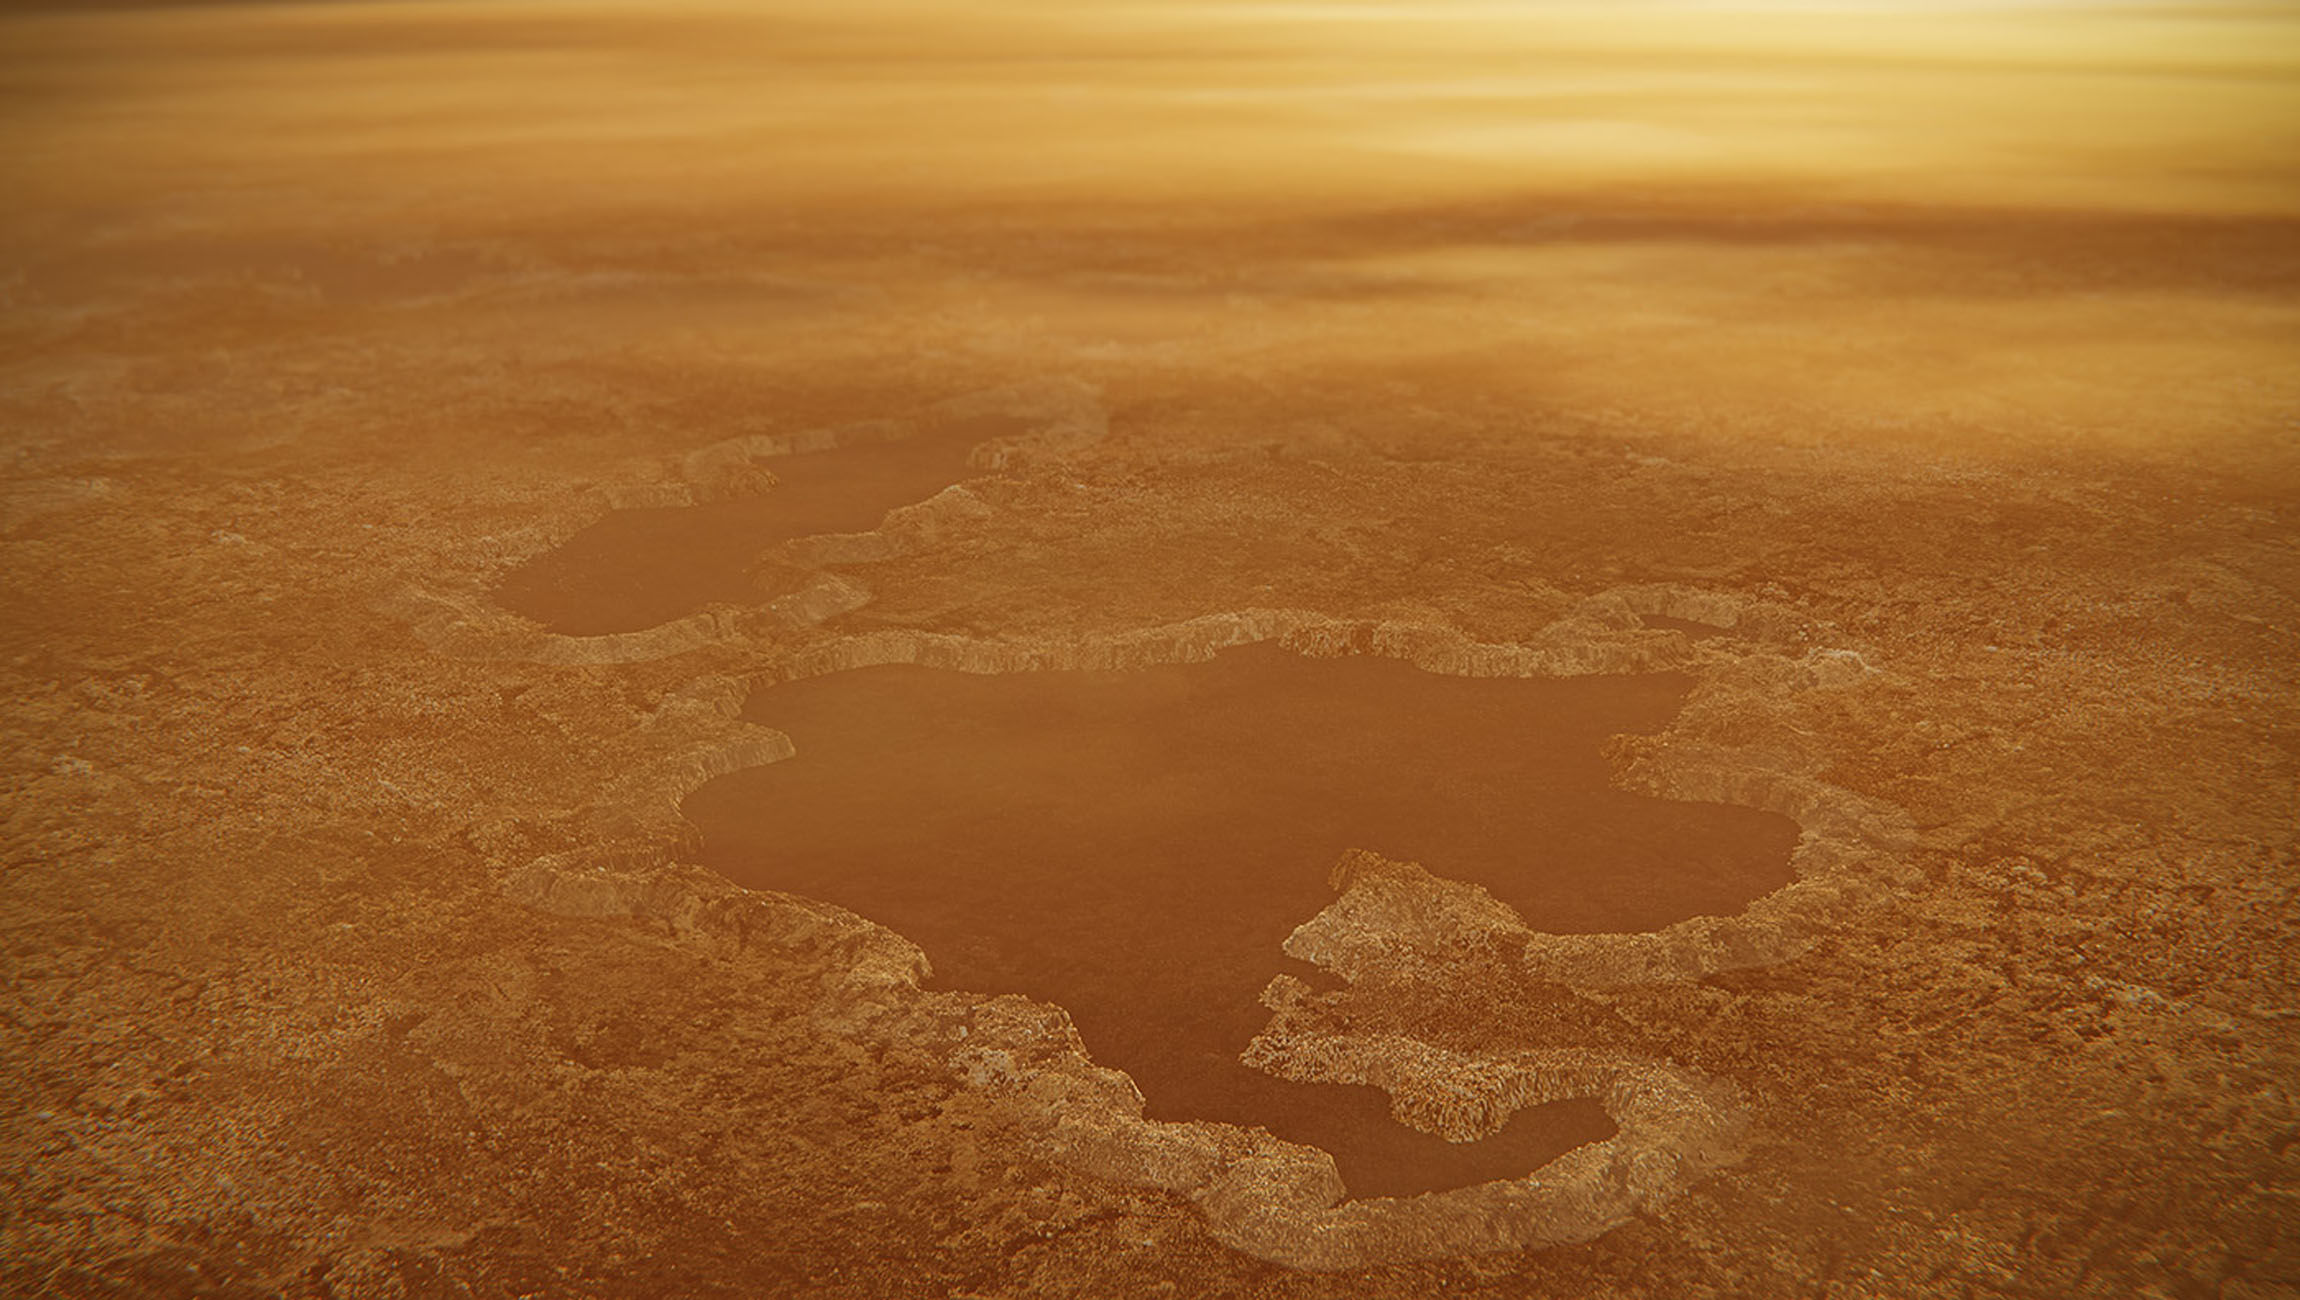 NASA image of Titan